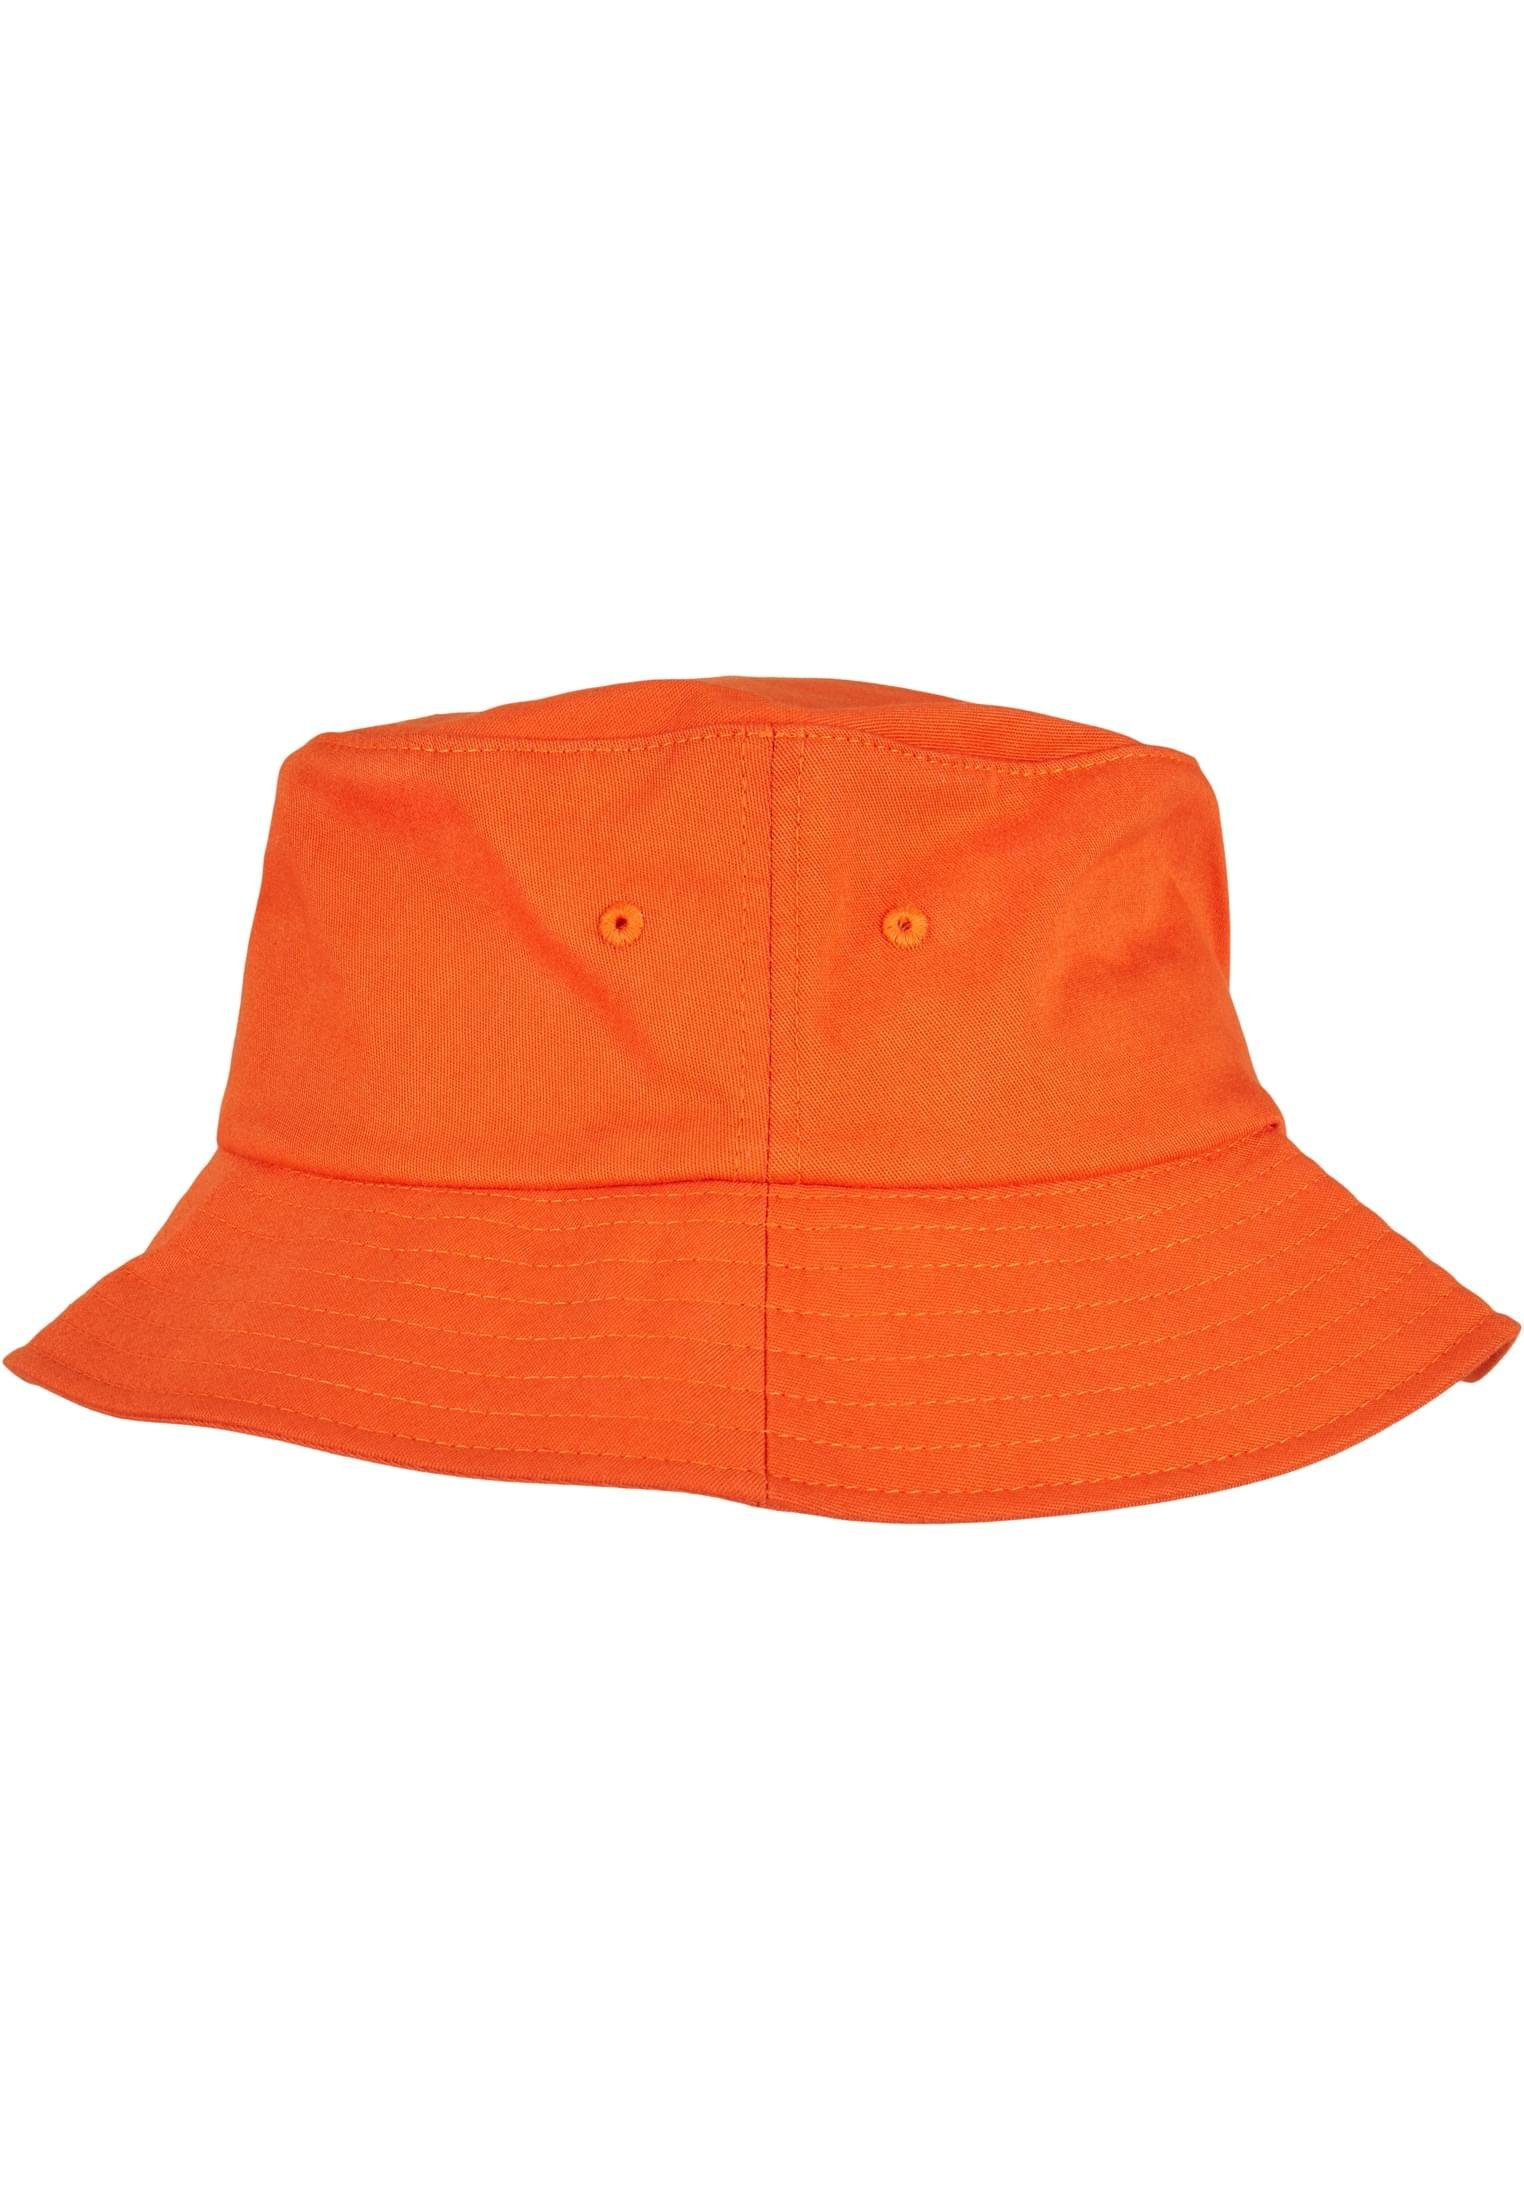 Twill Bucket Flexfit Cotton Flexfit orange Flex Cap Accessoires Hat